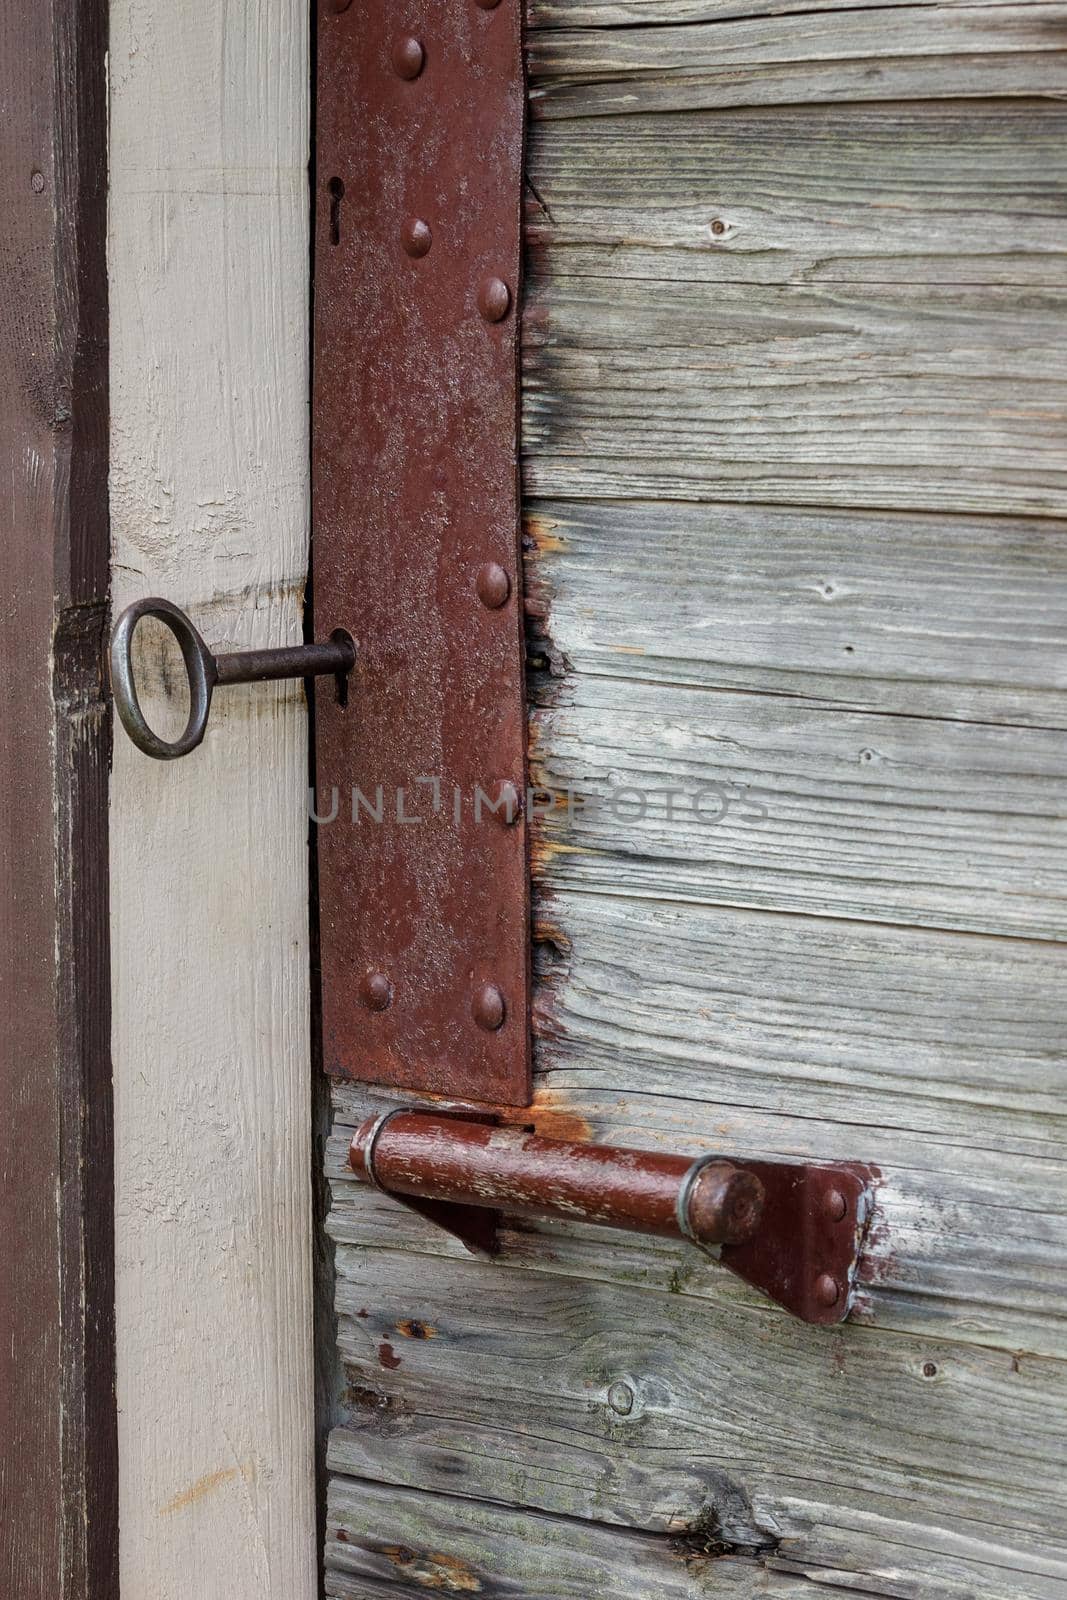 Old lock on wooden door Close-up padlock on old wooden door. by Lincikas